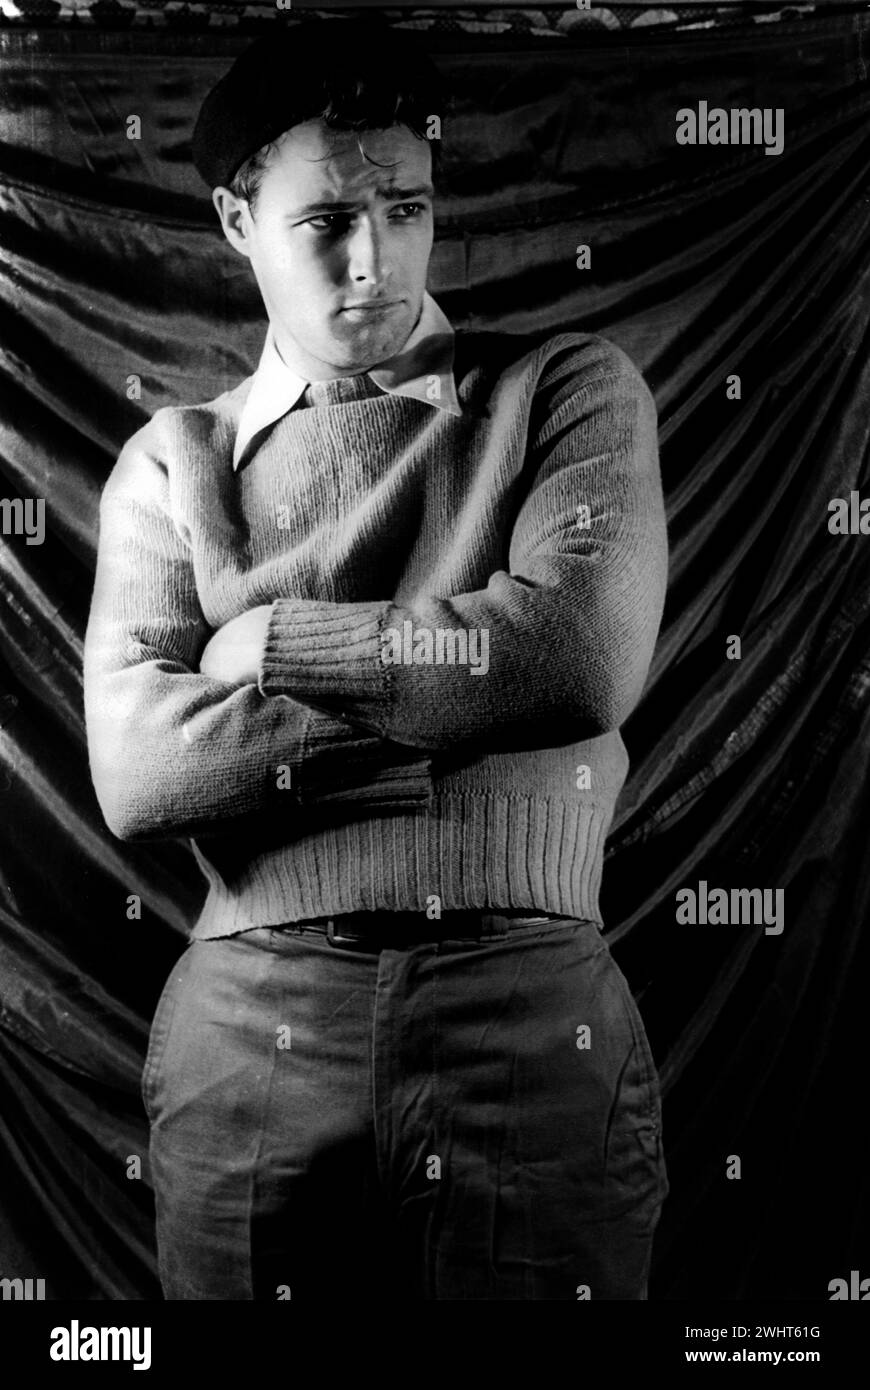 Fotografía de retrato de Carl Van Vechten de Marlon Brando durante la producción de Broadway de Un tranvía llamado Desire (27 de diciembre de 1948) Foto de stock